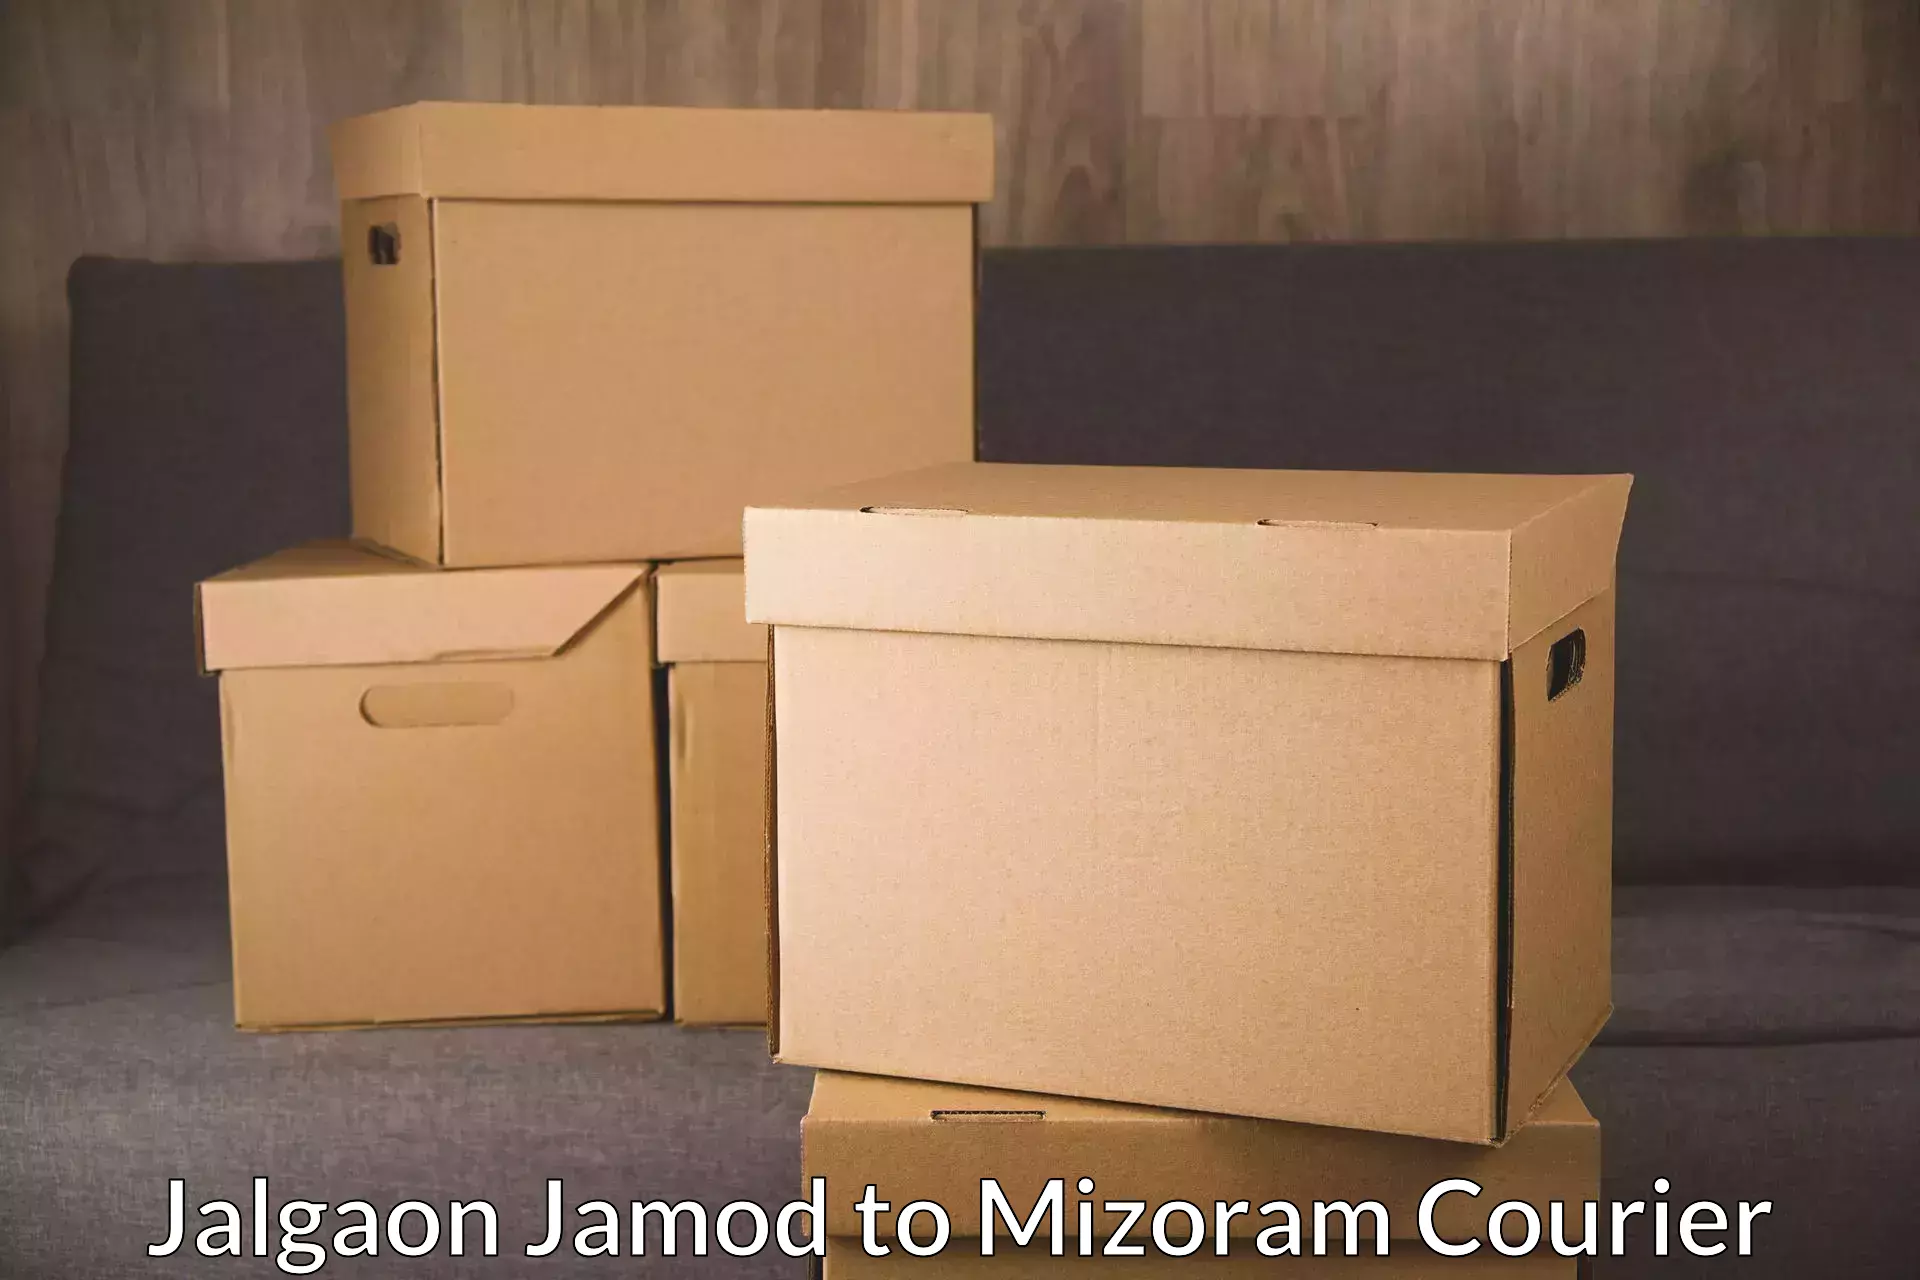 Express package handling Jalgaon Jamod to Darlawn